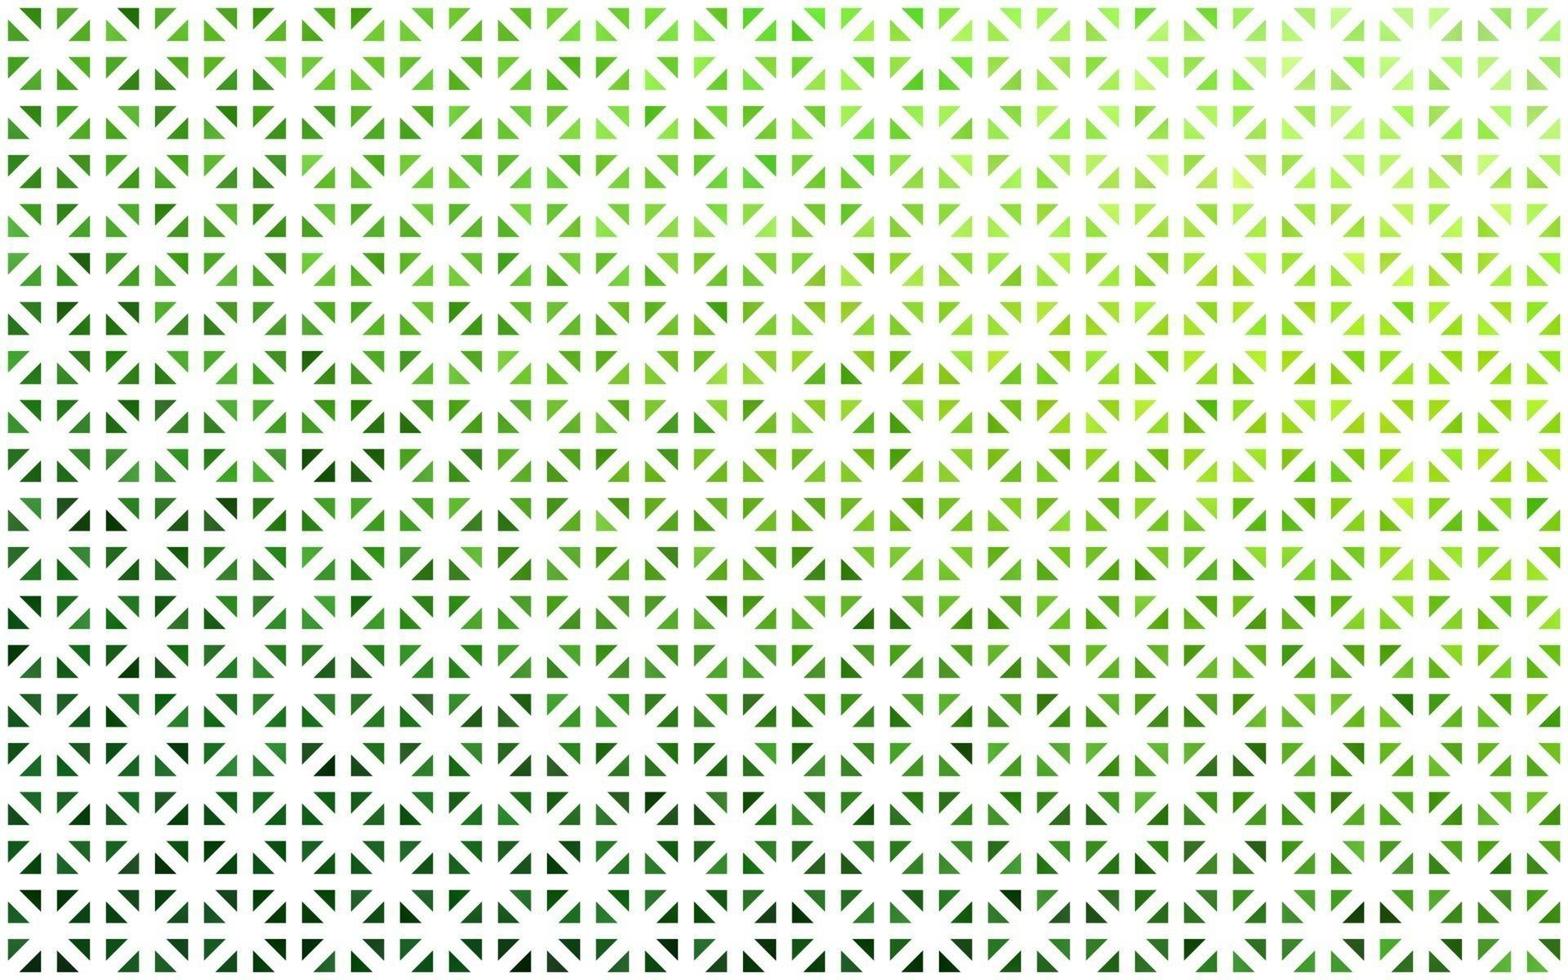 fundo verde claro do vetor com triângulos.